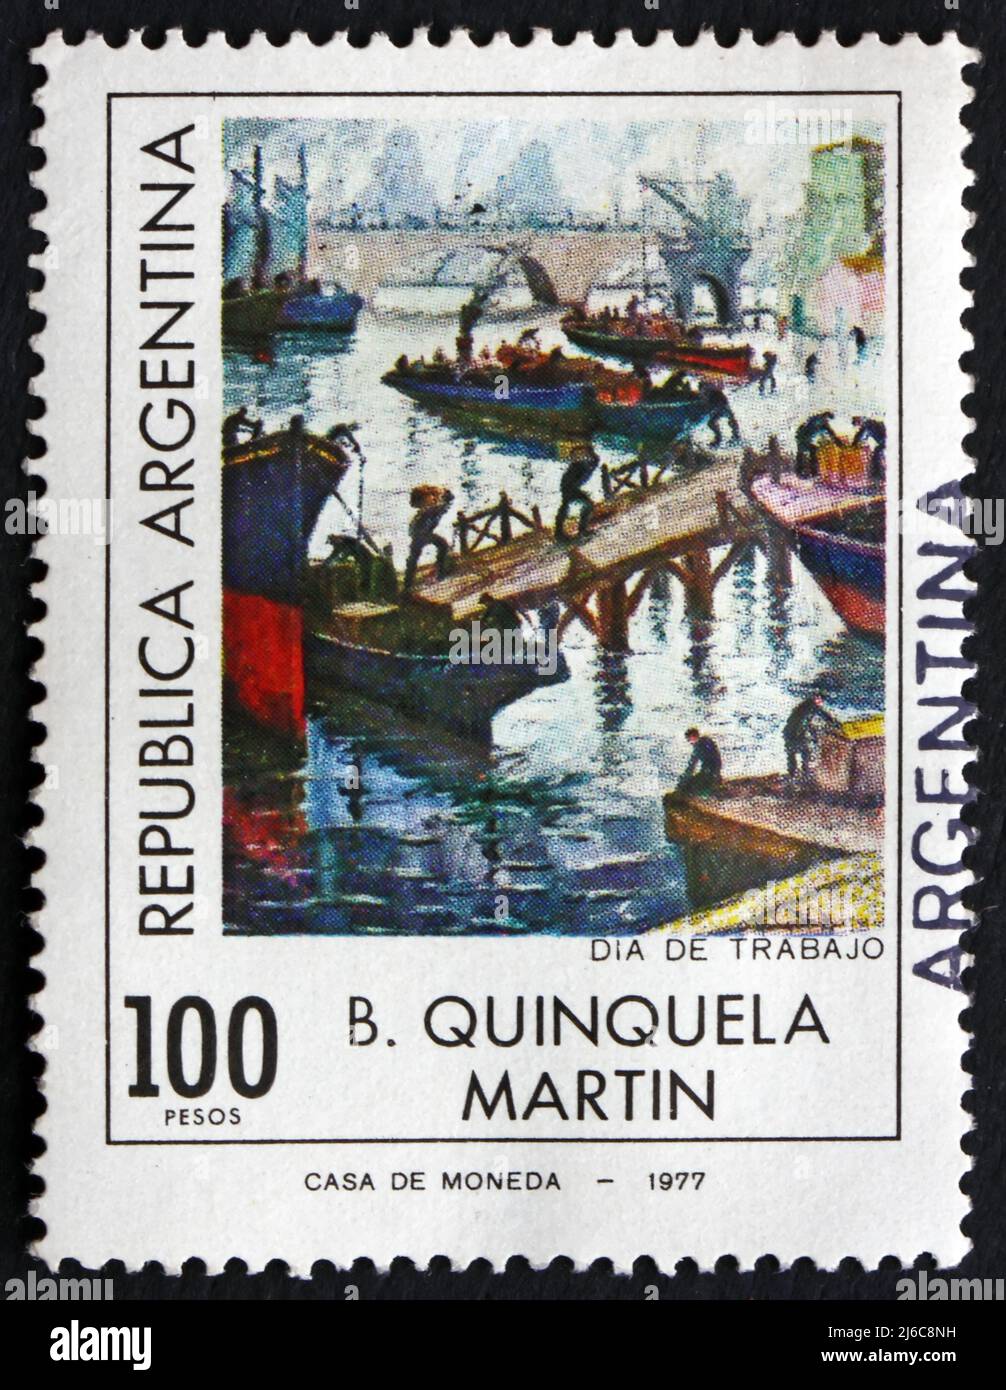 ARGENTINE - VERS 1977: Un timbre imprimé en Argentine montre la fête du travail, peinture par B. Quinquela Martin, vers 1977 Banque D'Images